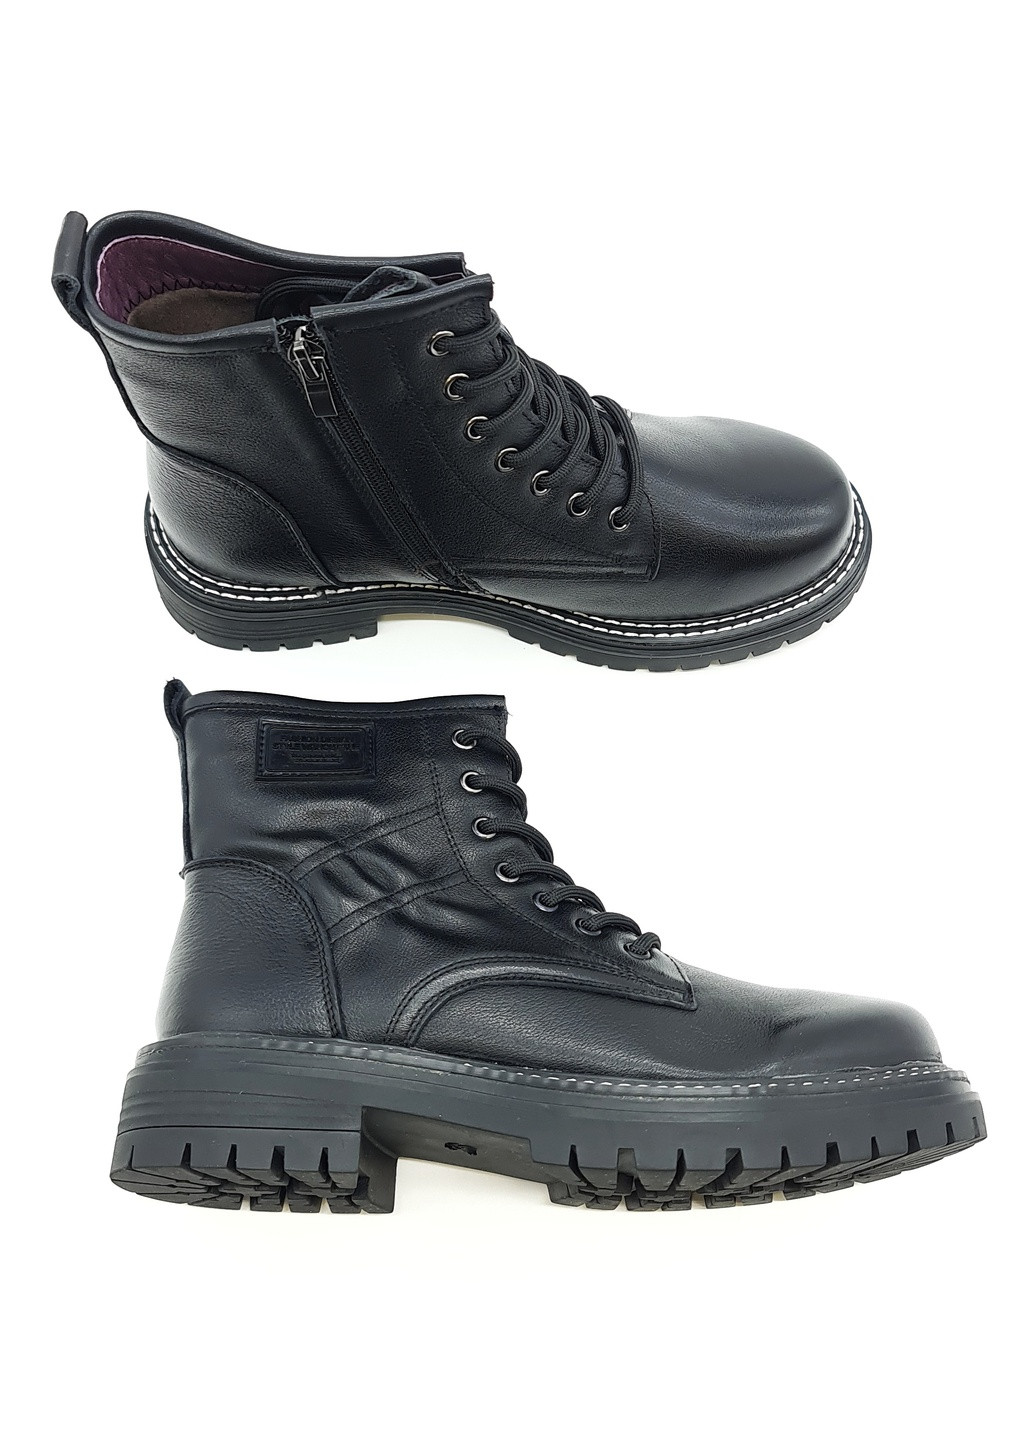 Жіночі черевики чорні шкіряні EG-19-2 24 см (р) Egga (259299531)